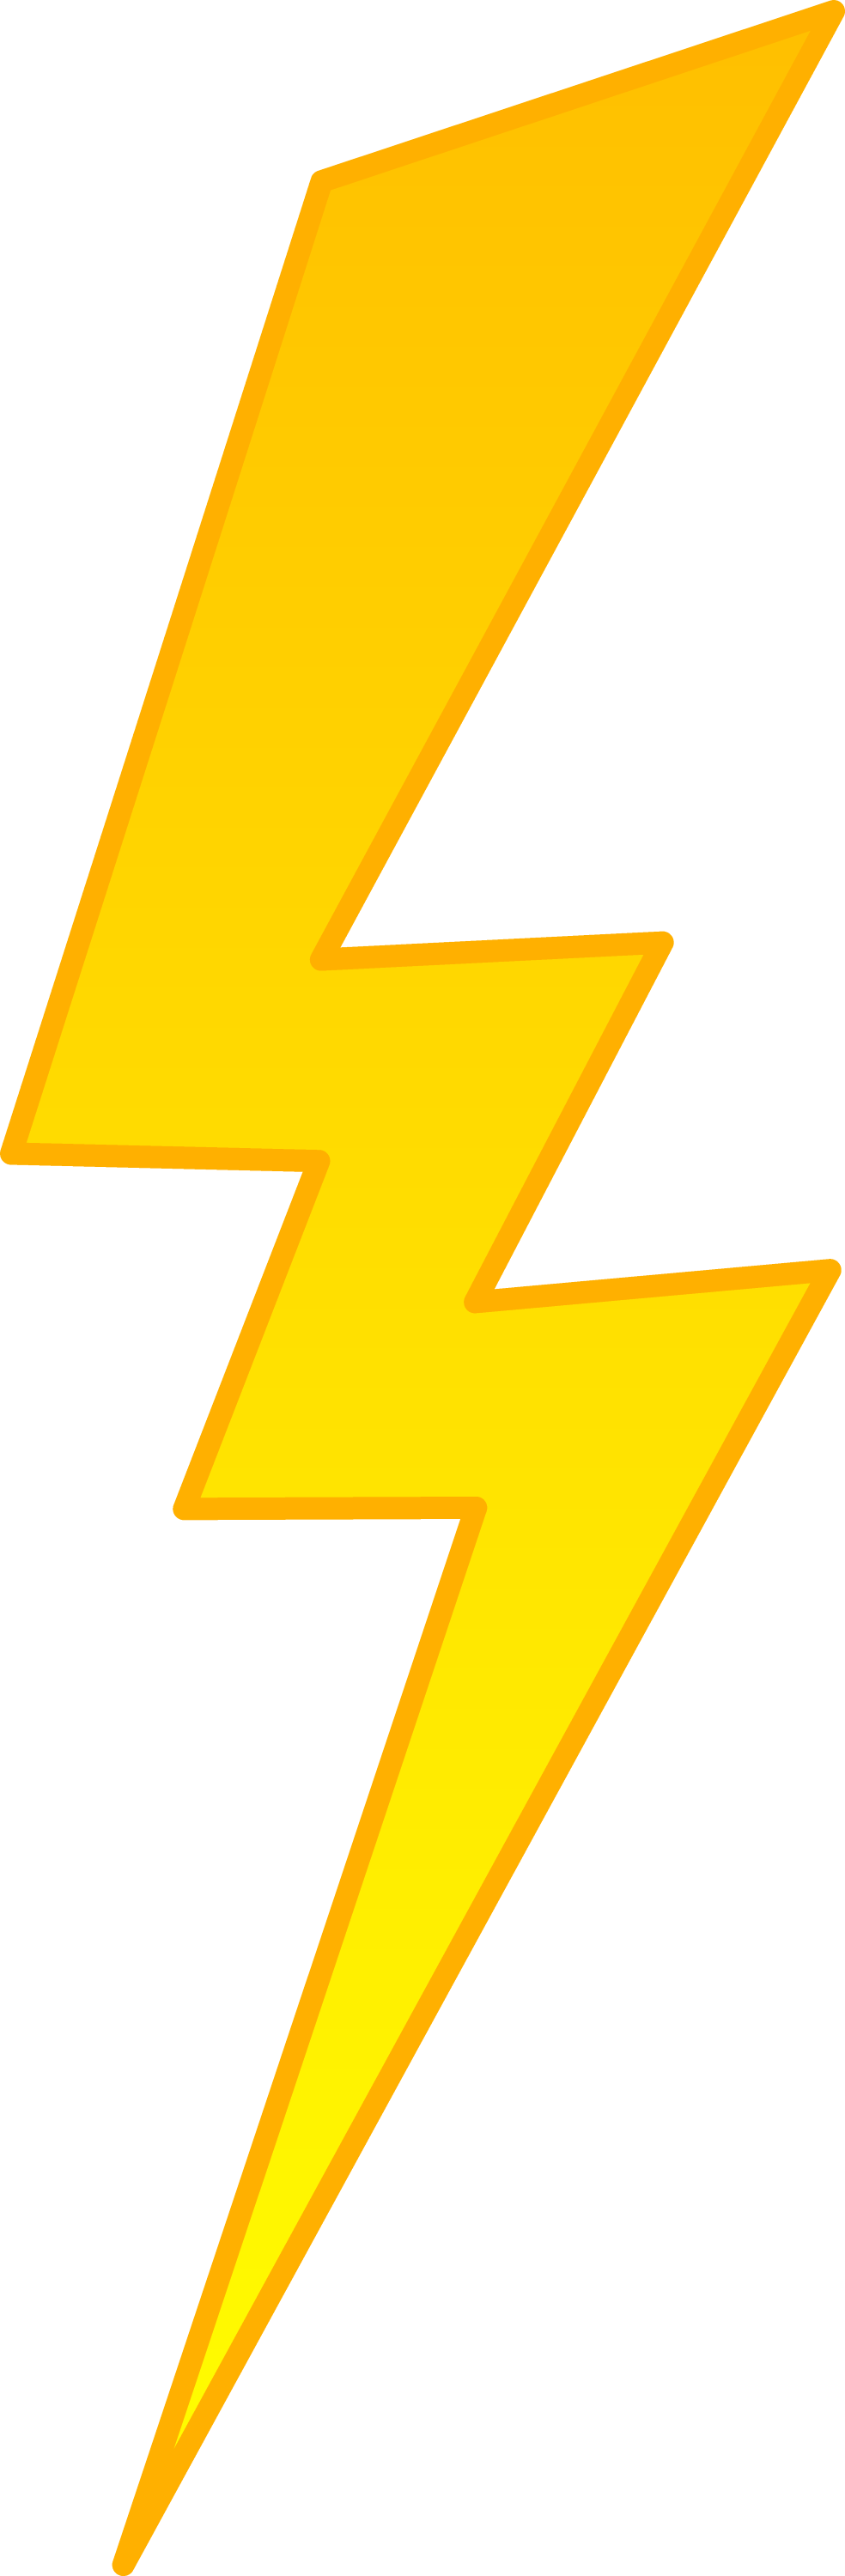 Lightning Bolt Background PNG